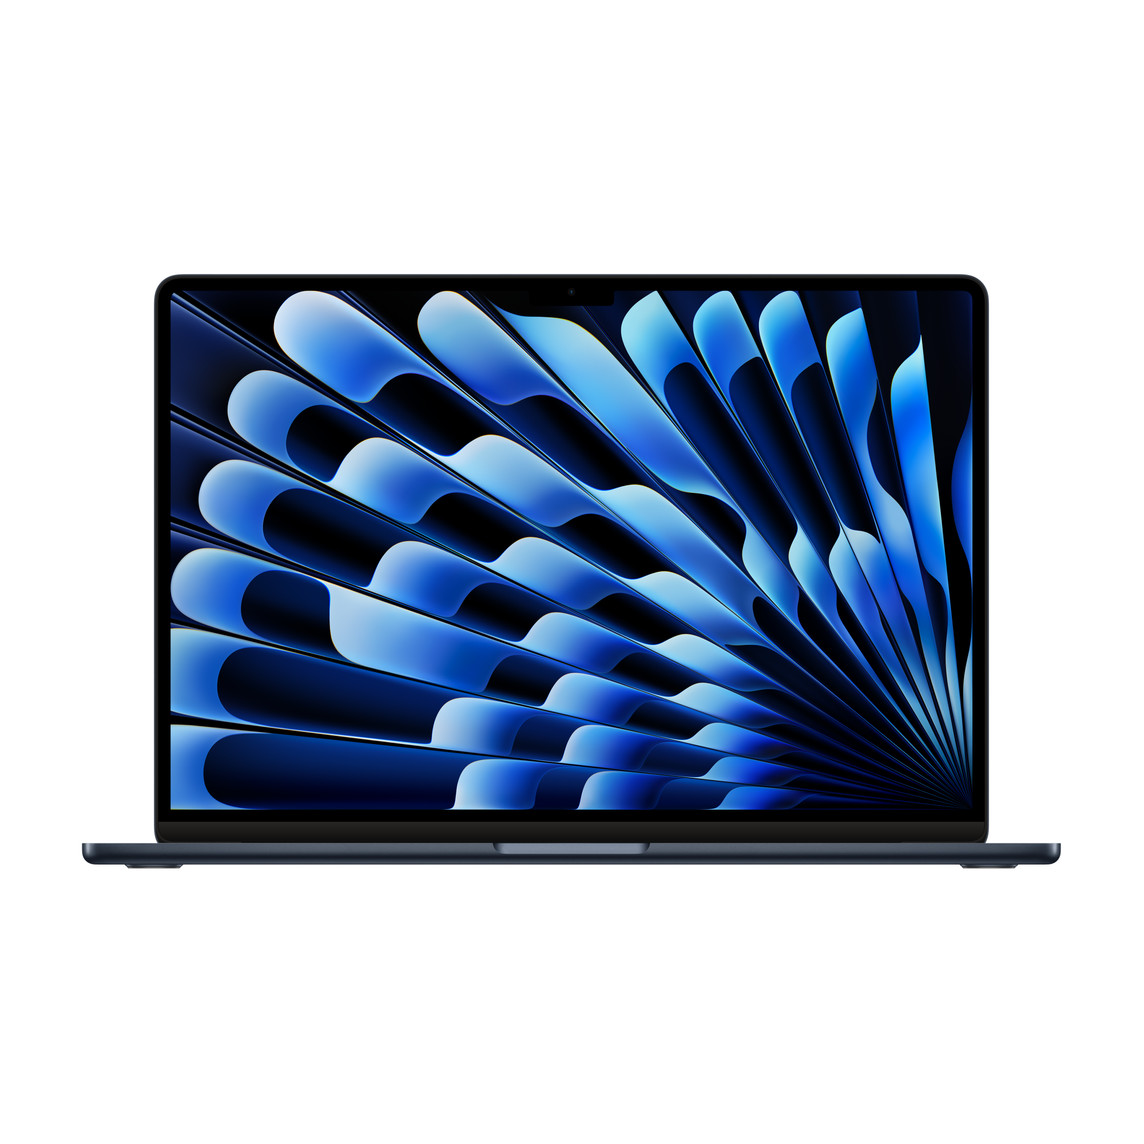 MacBook Air en color medianoche abierto que muestra el marco fino, la cámara FaceTime HD, las bases de apoyo y las esquinas redondeadas